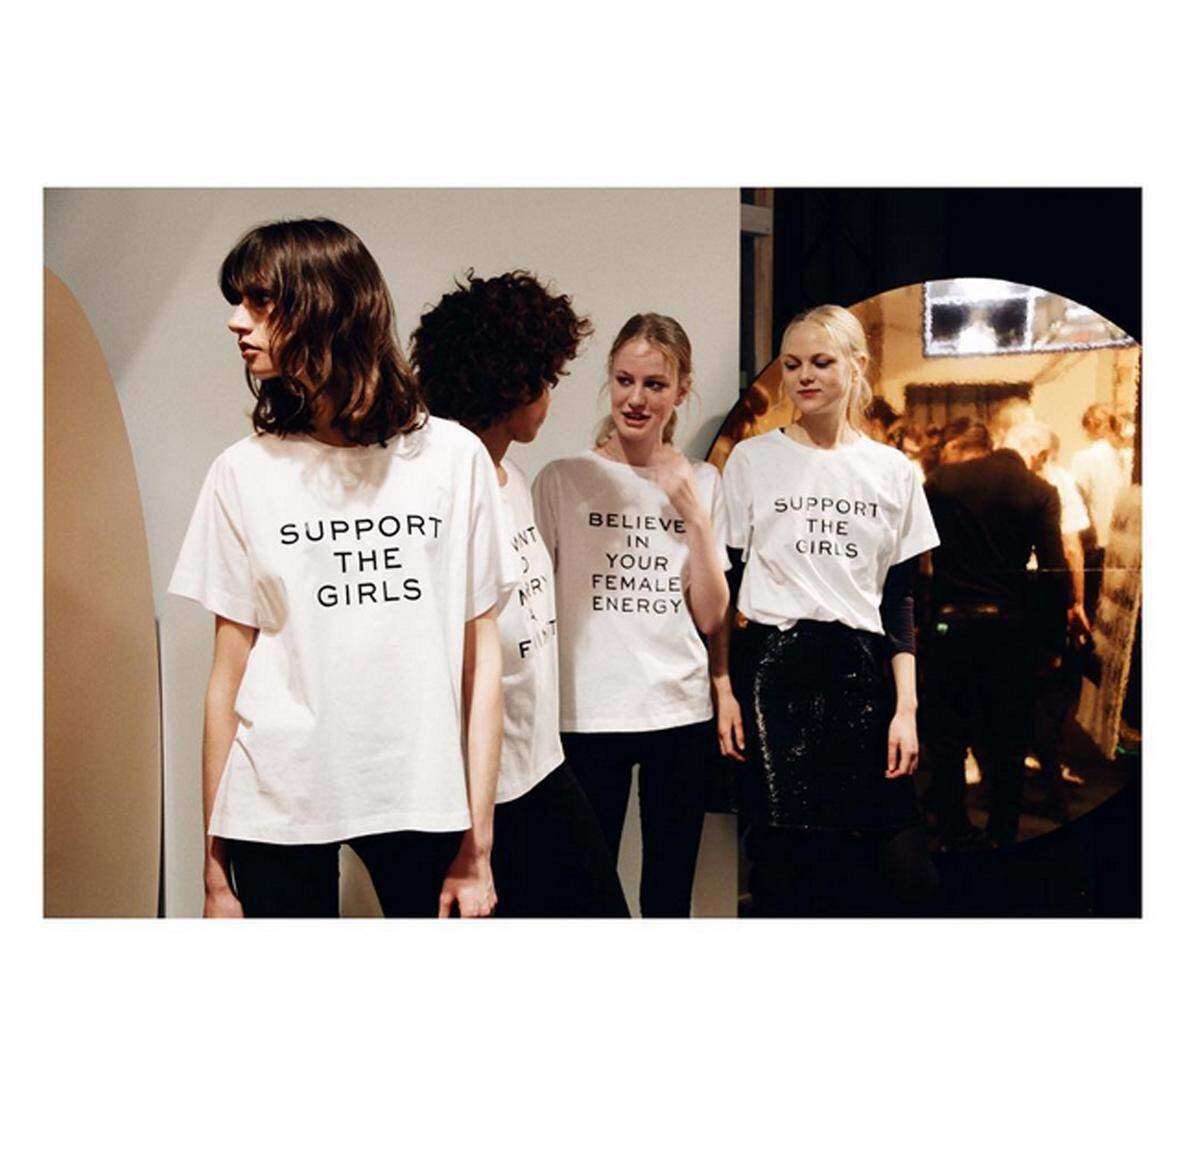 "Support the Girls" und "Believe in Female Energy" ist da auf den Shirts zu lesen. Plakativ und überdeutlich wird Feminismus damit zum Modetrend. Und der kann mitunter auch recht kurzweilig sein.